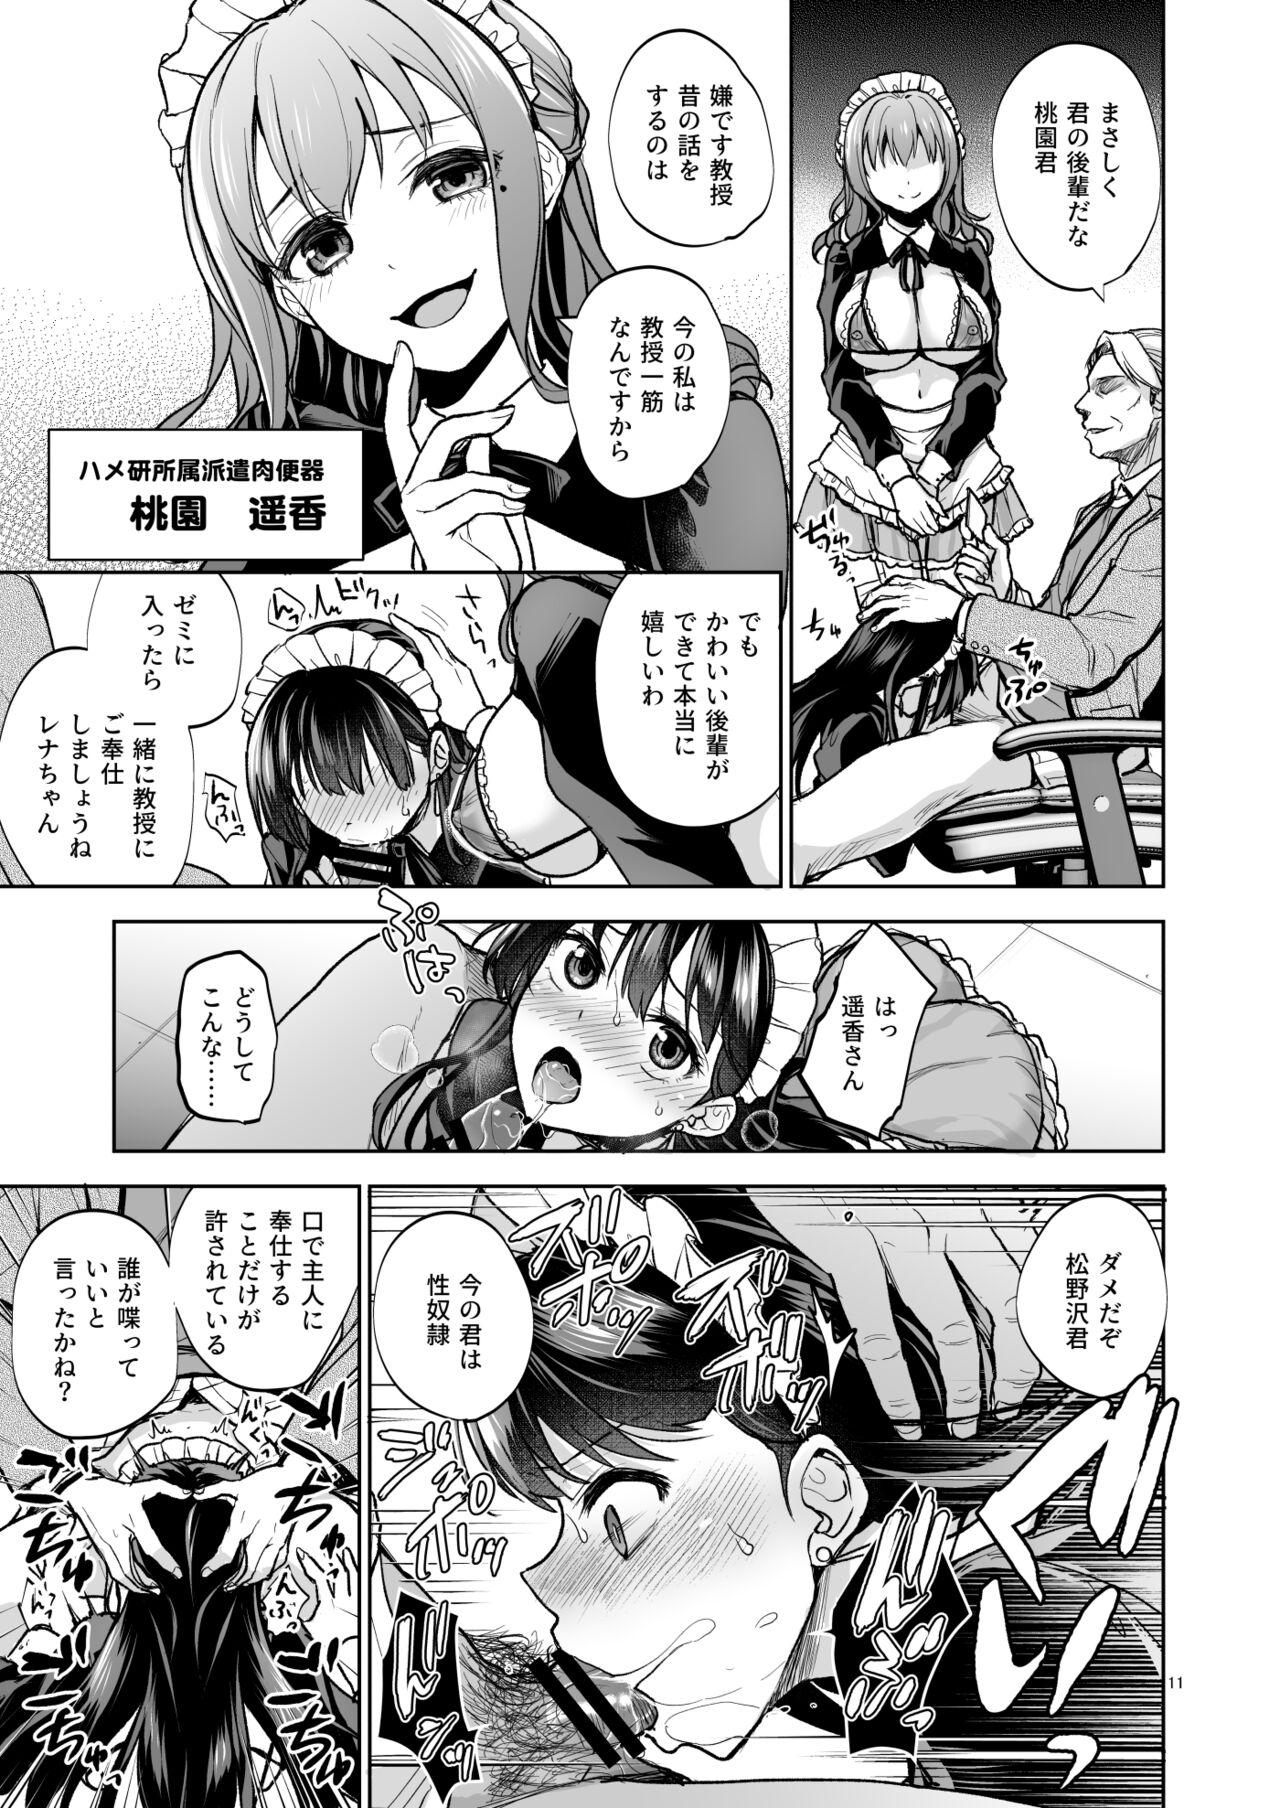 Peluda Omoide wa Yogosareru 2 - Original Amadora - Page 10